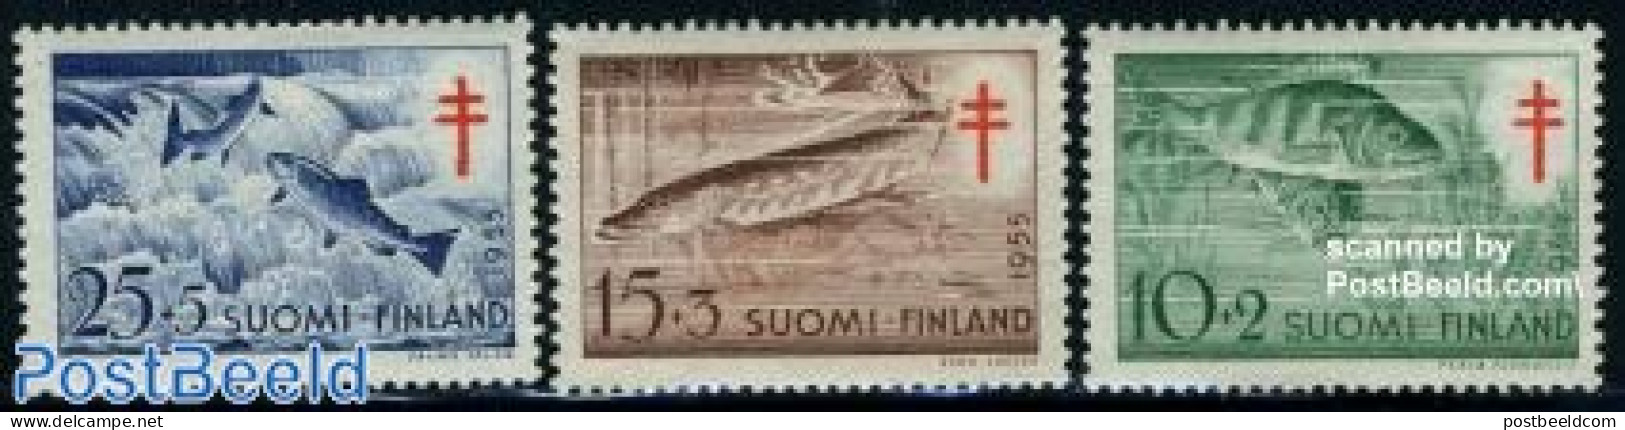 Finland 1955 Anti Tuberculosis, Fish 3v, Mint NH, Health - Nature - Anti Tuberculosis - Fish - Ongebruikt